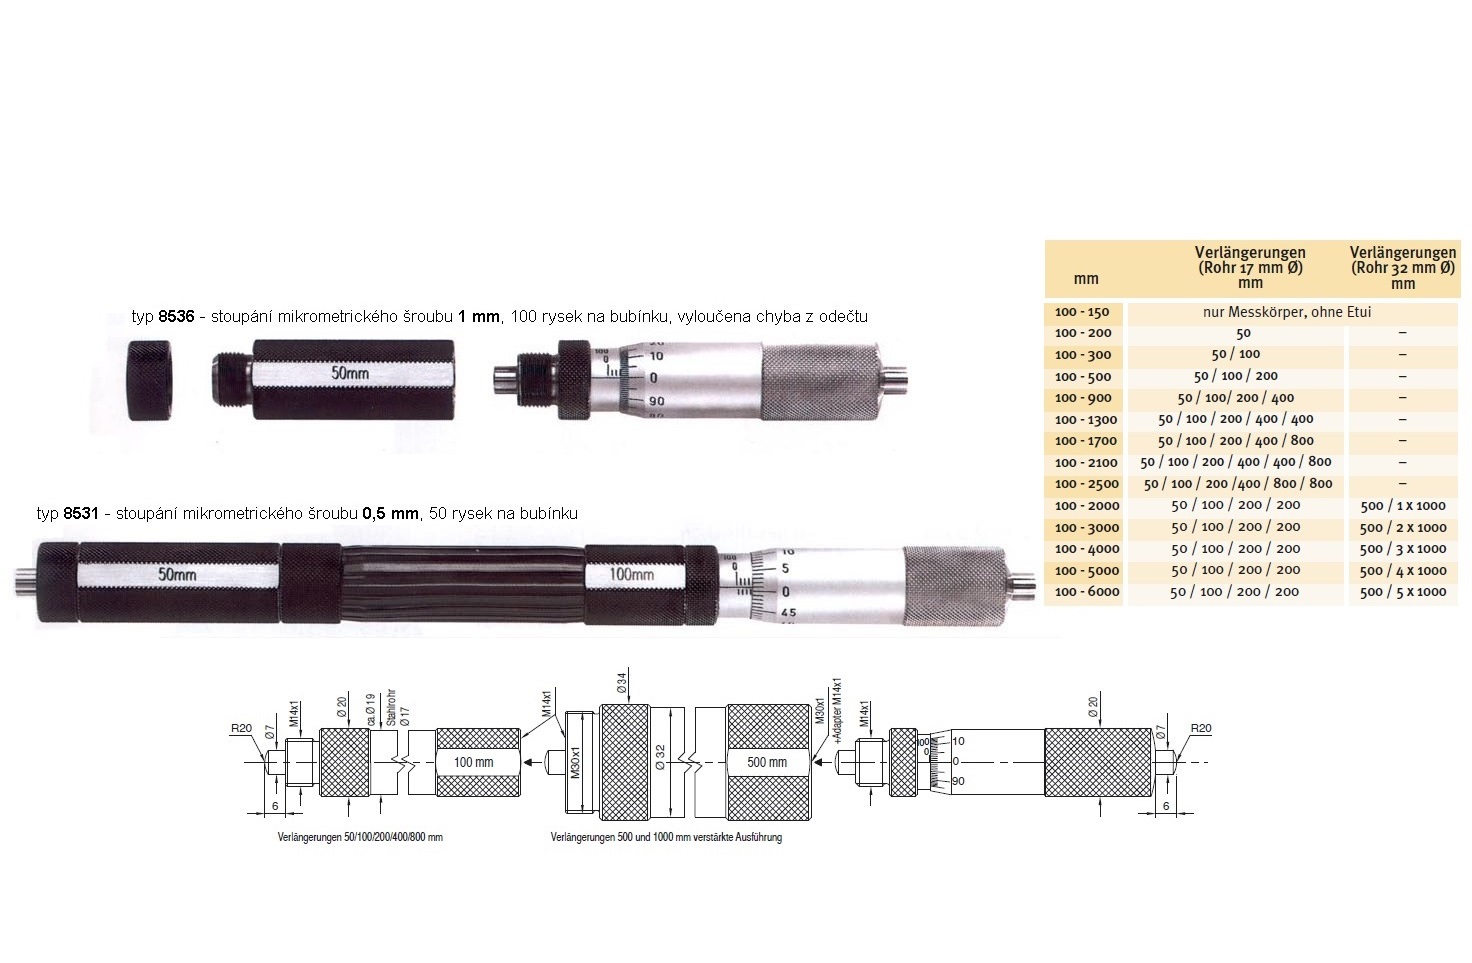 Mikrometrický odpich skládací HARTIG 100-2500 mm, stoupání šroubu 1 mm, doteky tvrdokov